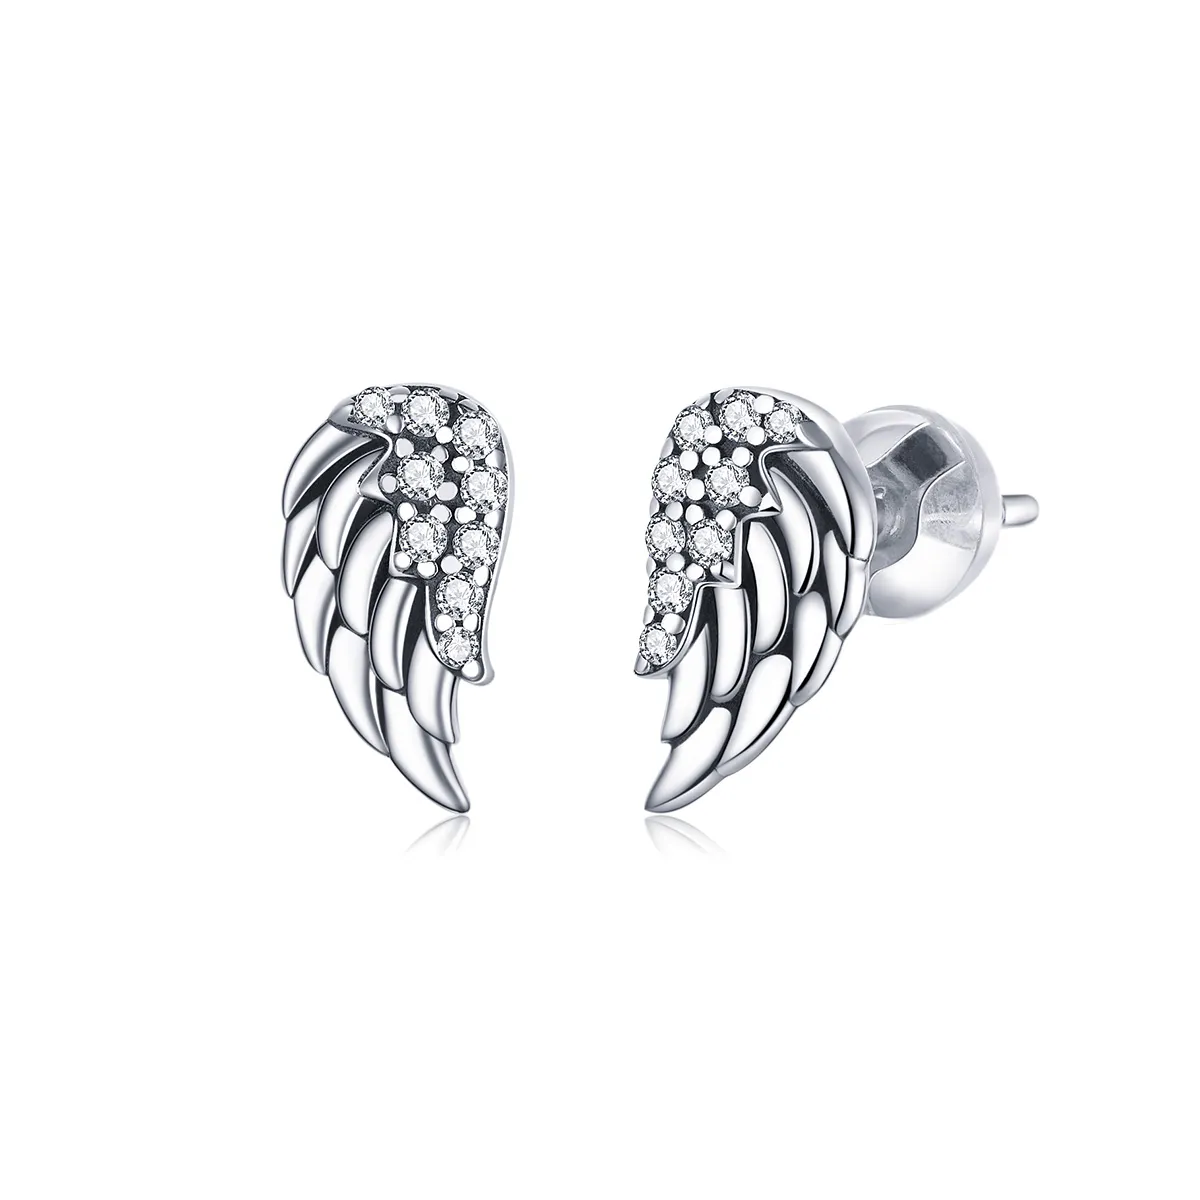 Pandora Style Silver Wings Stud Earrings - SCE882